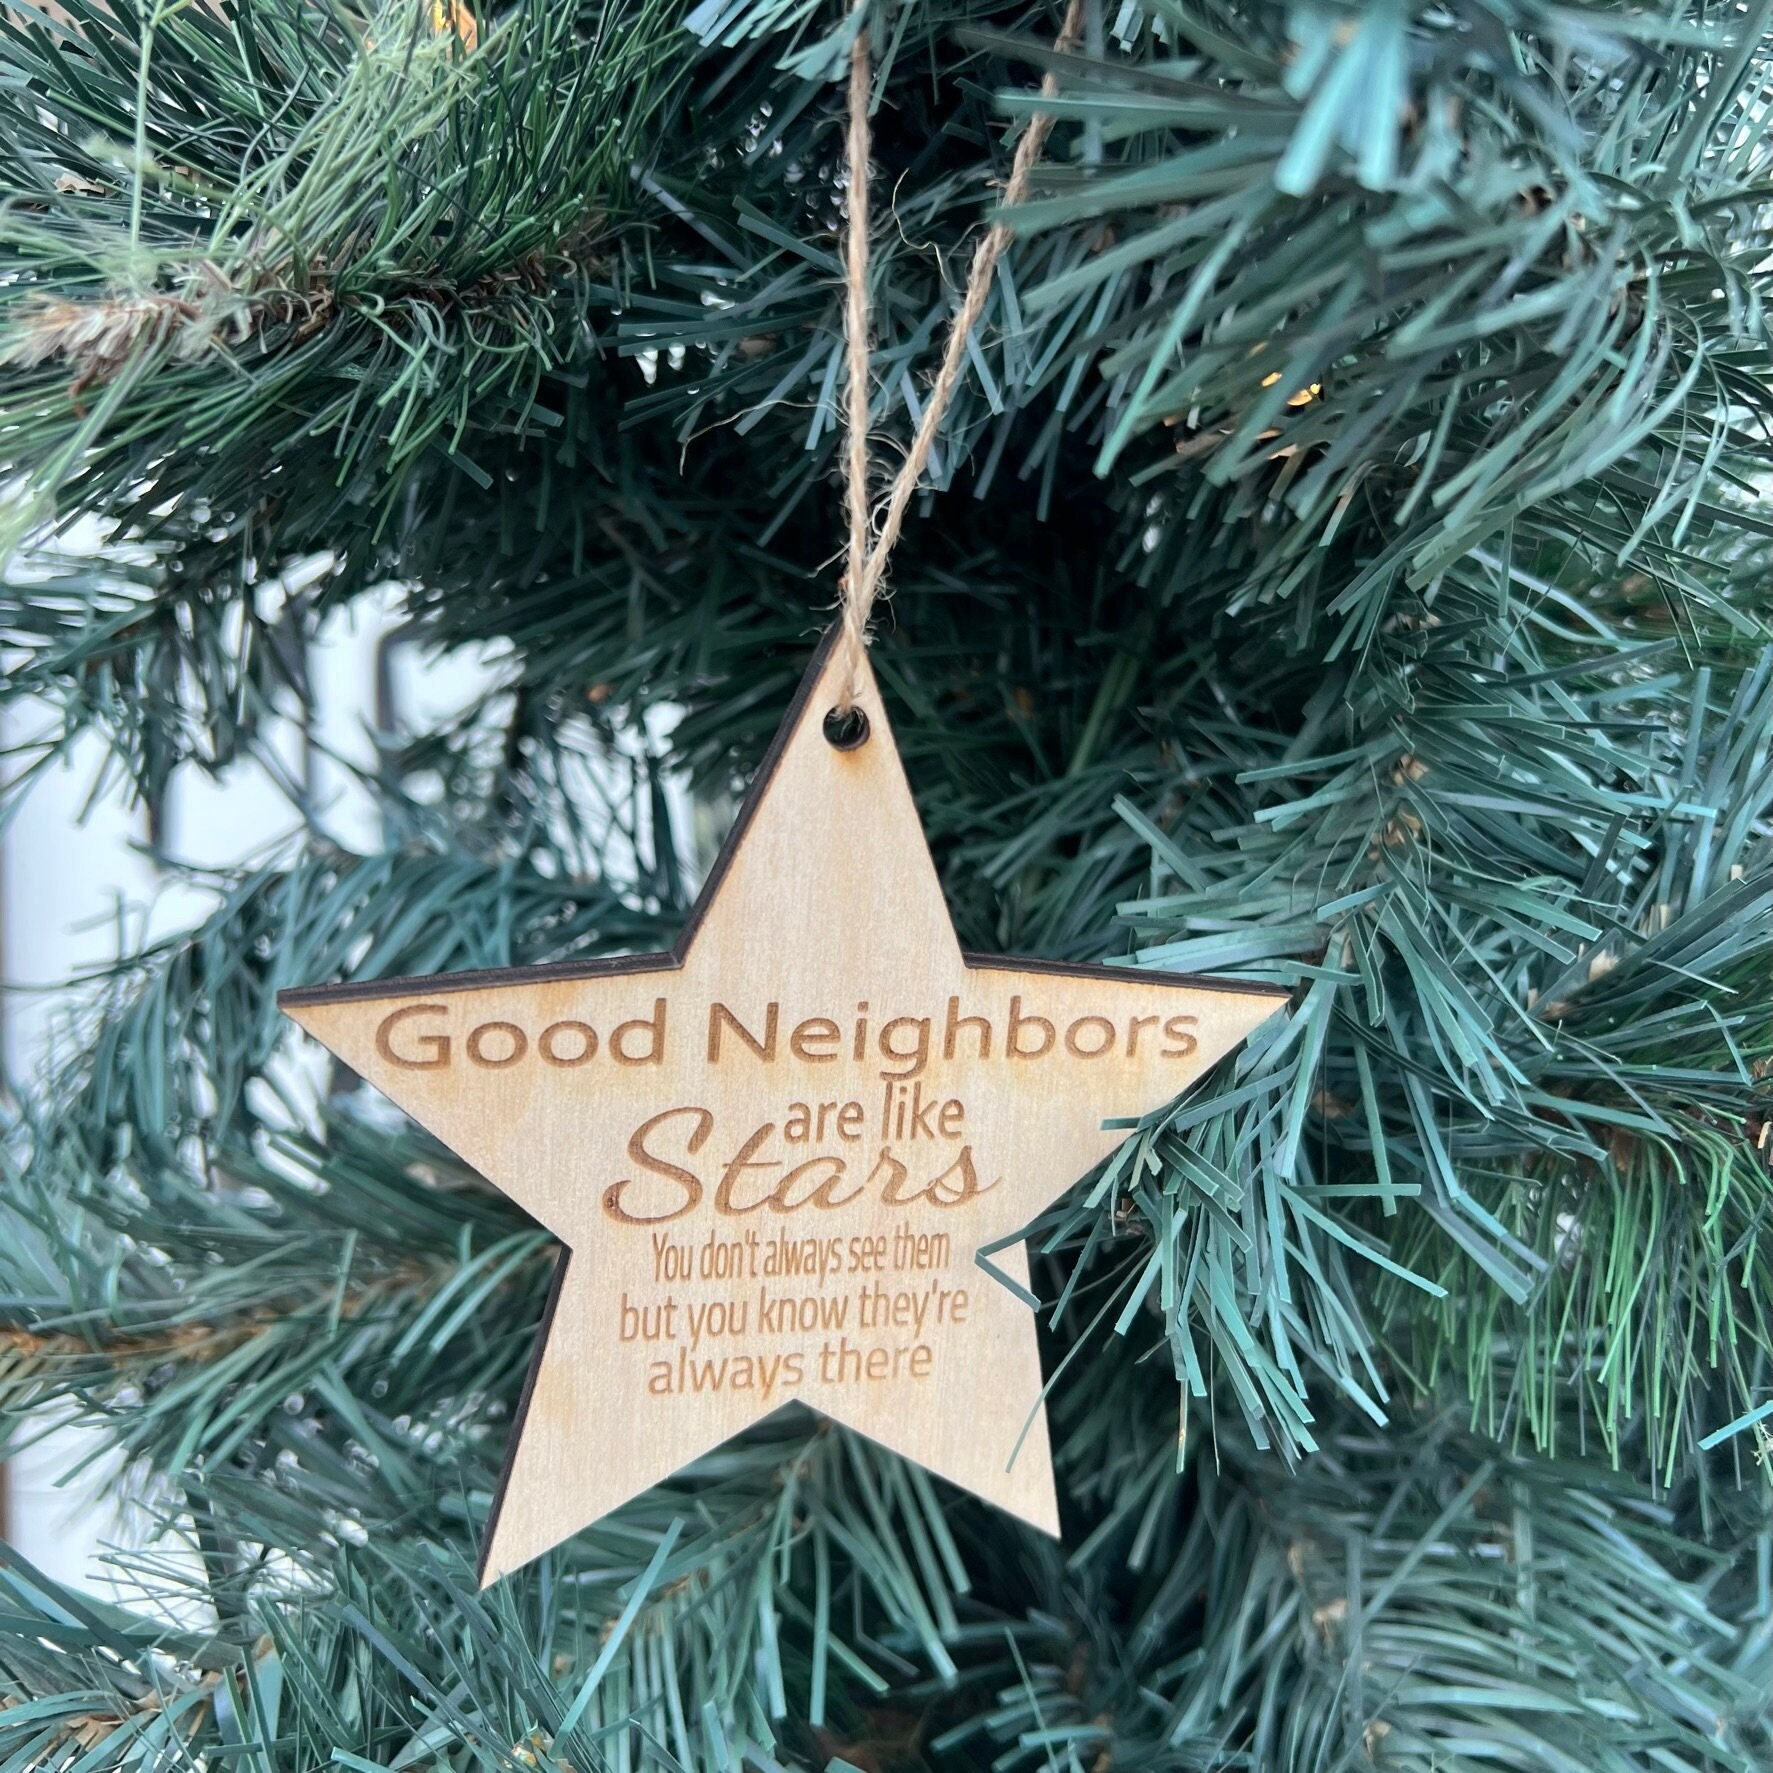 A Good Neighbor Ornament